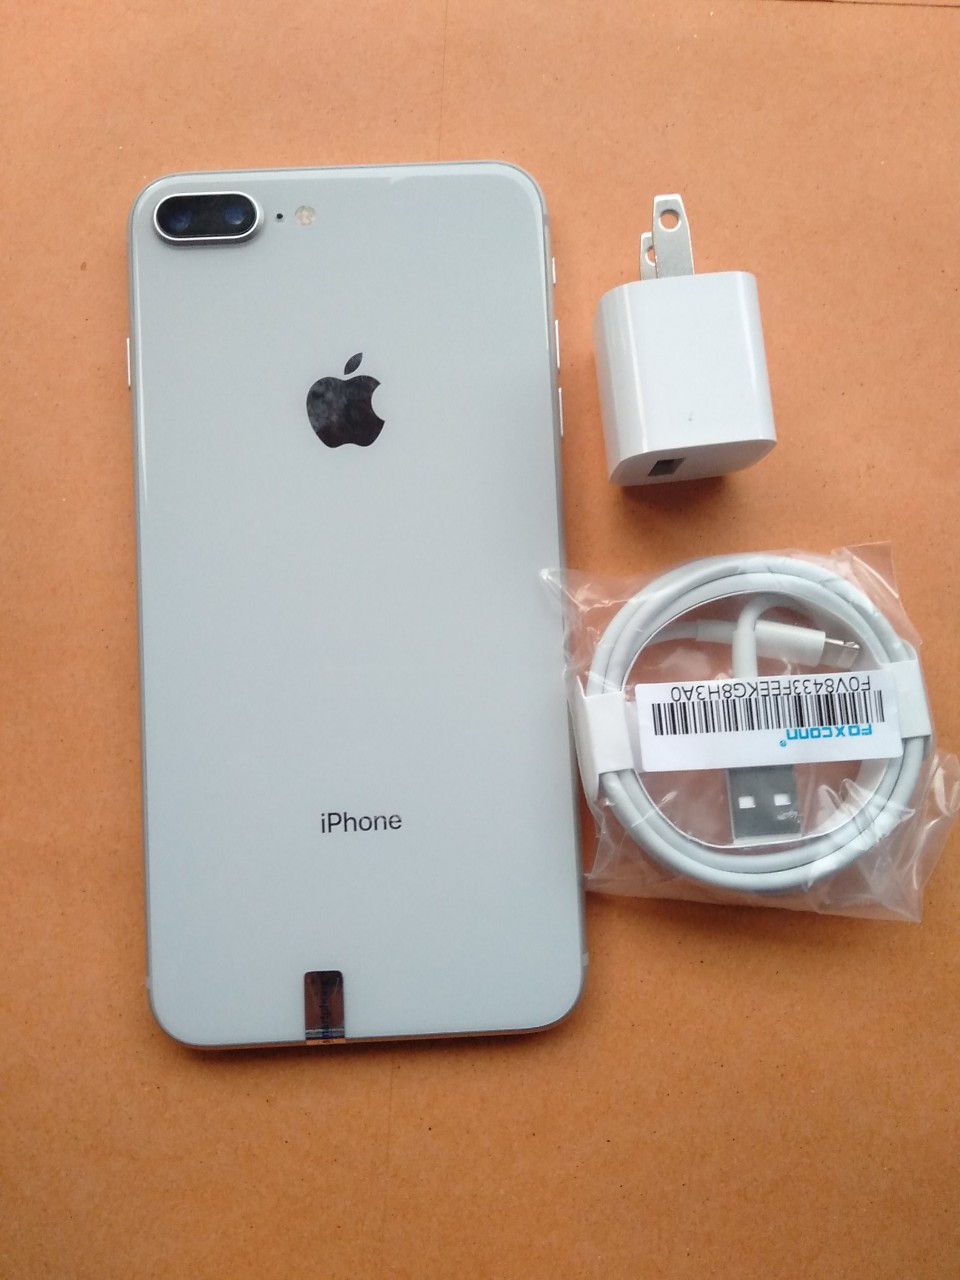 iPhone 8 Plus đỏ vừa về Việt Nam, giá rẻ hơn hàng chính hãng